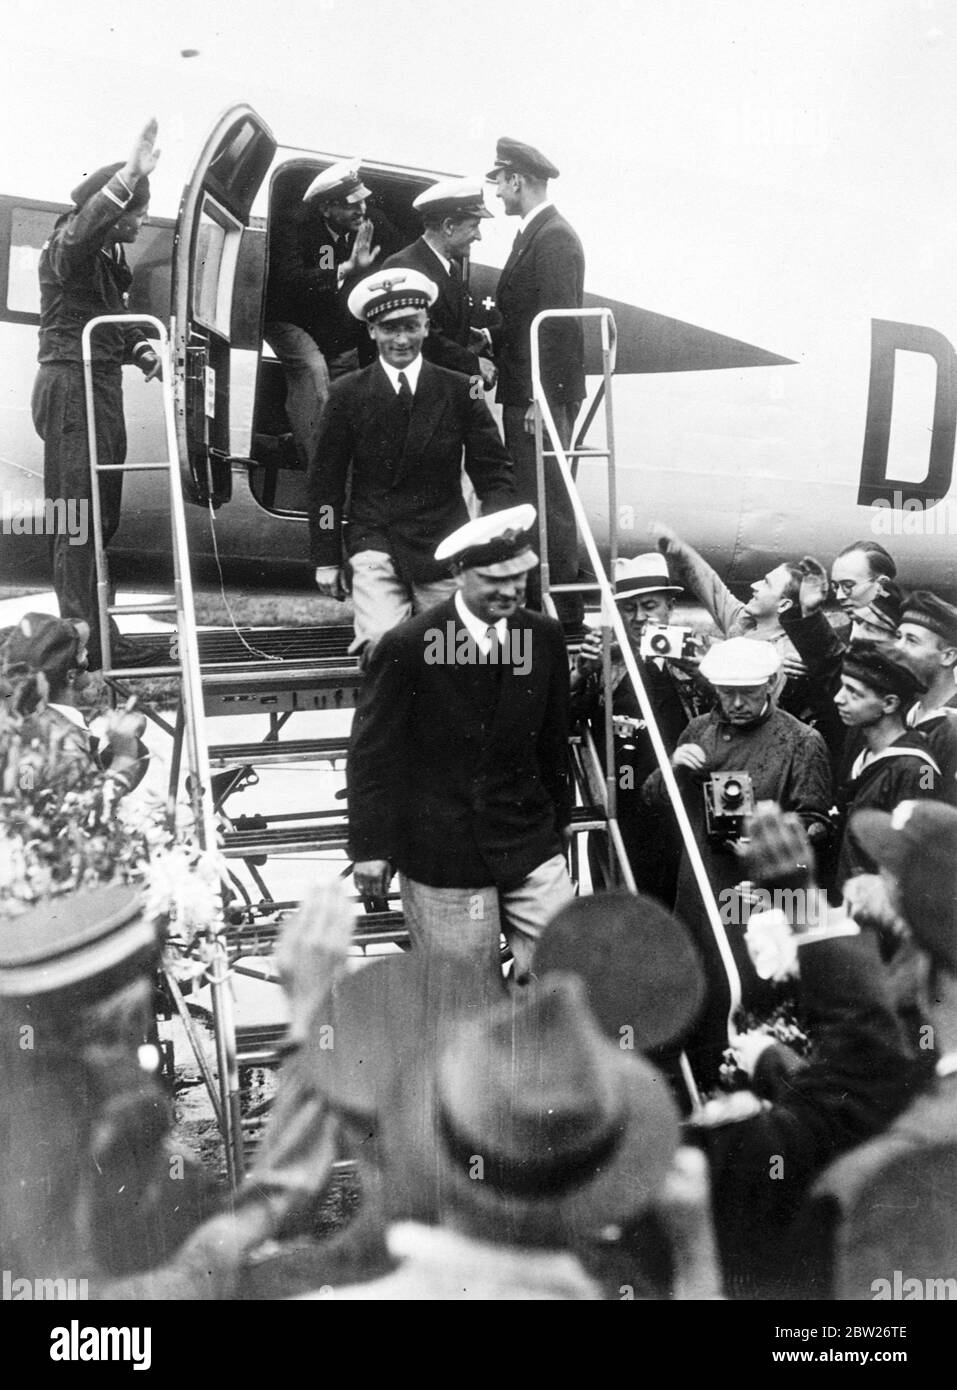 Die deutsche Besatzung begrüßte nach dem Rekordflug im Atlantik zu Hause. Das deutsche Flugzeug "Brandenburg", das in 24 Stunden 56 Minuten von Berlin nach New York geflogen war, landete nach einem Rückflug von 19 Stunden 54 Minuten am Aerodrome Tempelhof, Berlin. Dies war der schnellste Flug von New York nach Berlin und schlug 1933 den Rekord des Weltfliegers Wiley Post von 24 Stunden 45 Minuten. Die Besatzung der Maschine, Kapitän Henke, Kapitän von Moreau, Funker Kober und Mechanic Dierberg, wurde ein ungeheures Zuhause empfangen und im Luftministerium von Gene empfangen Stockfoto